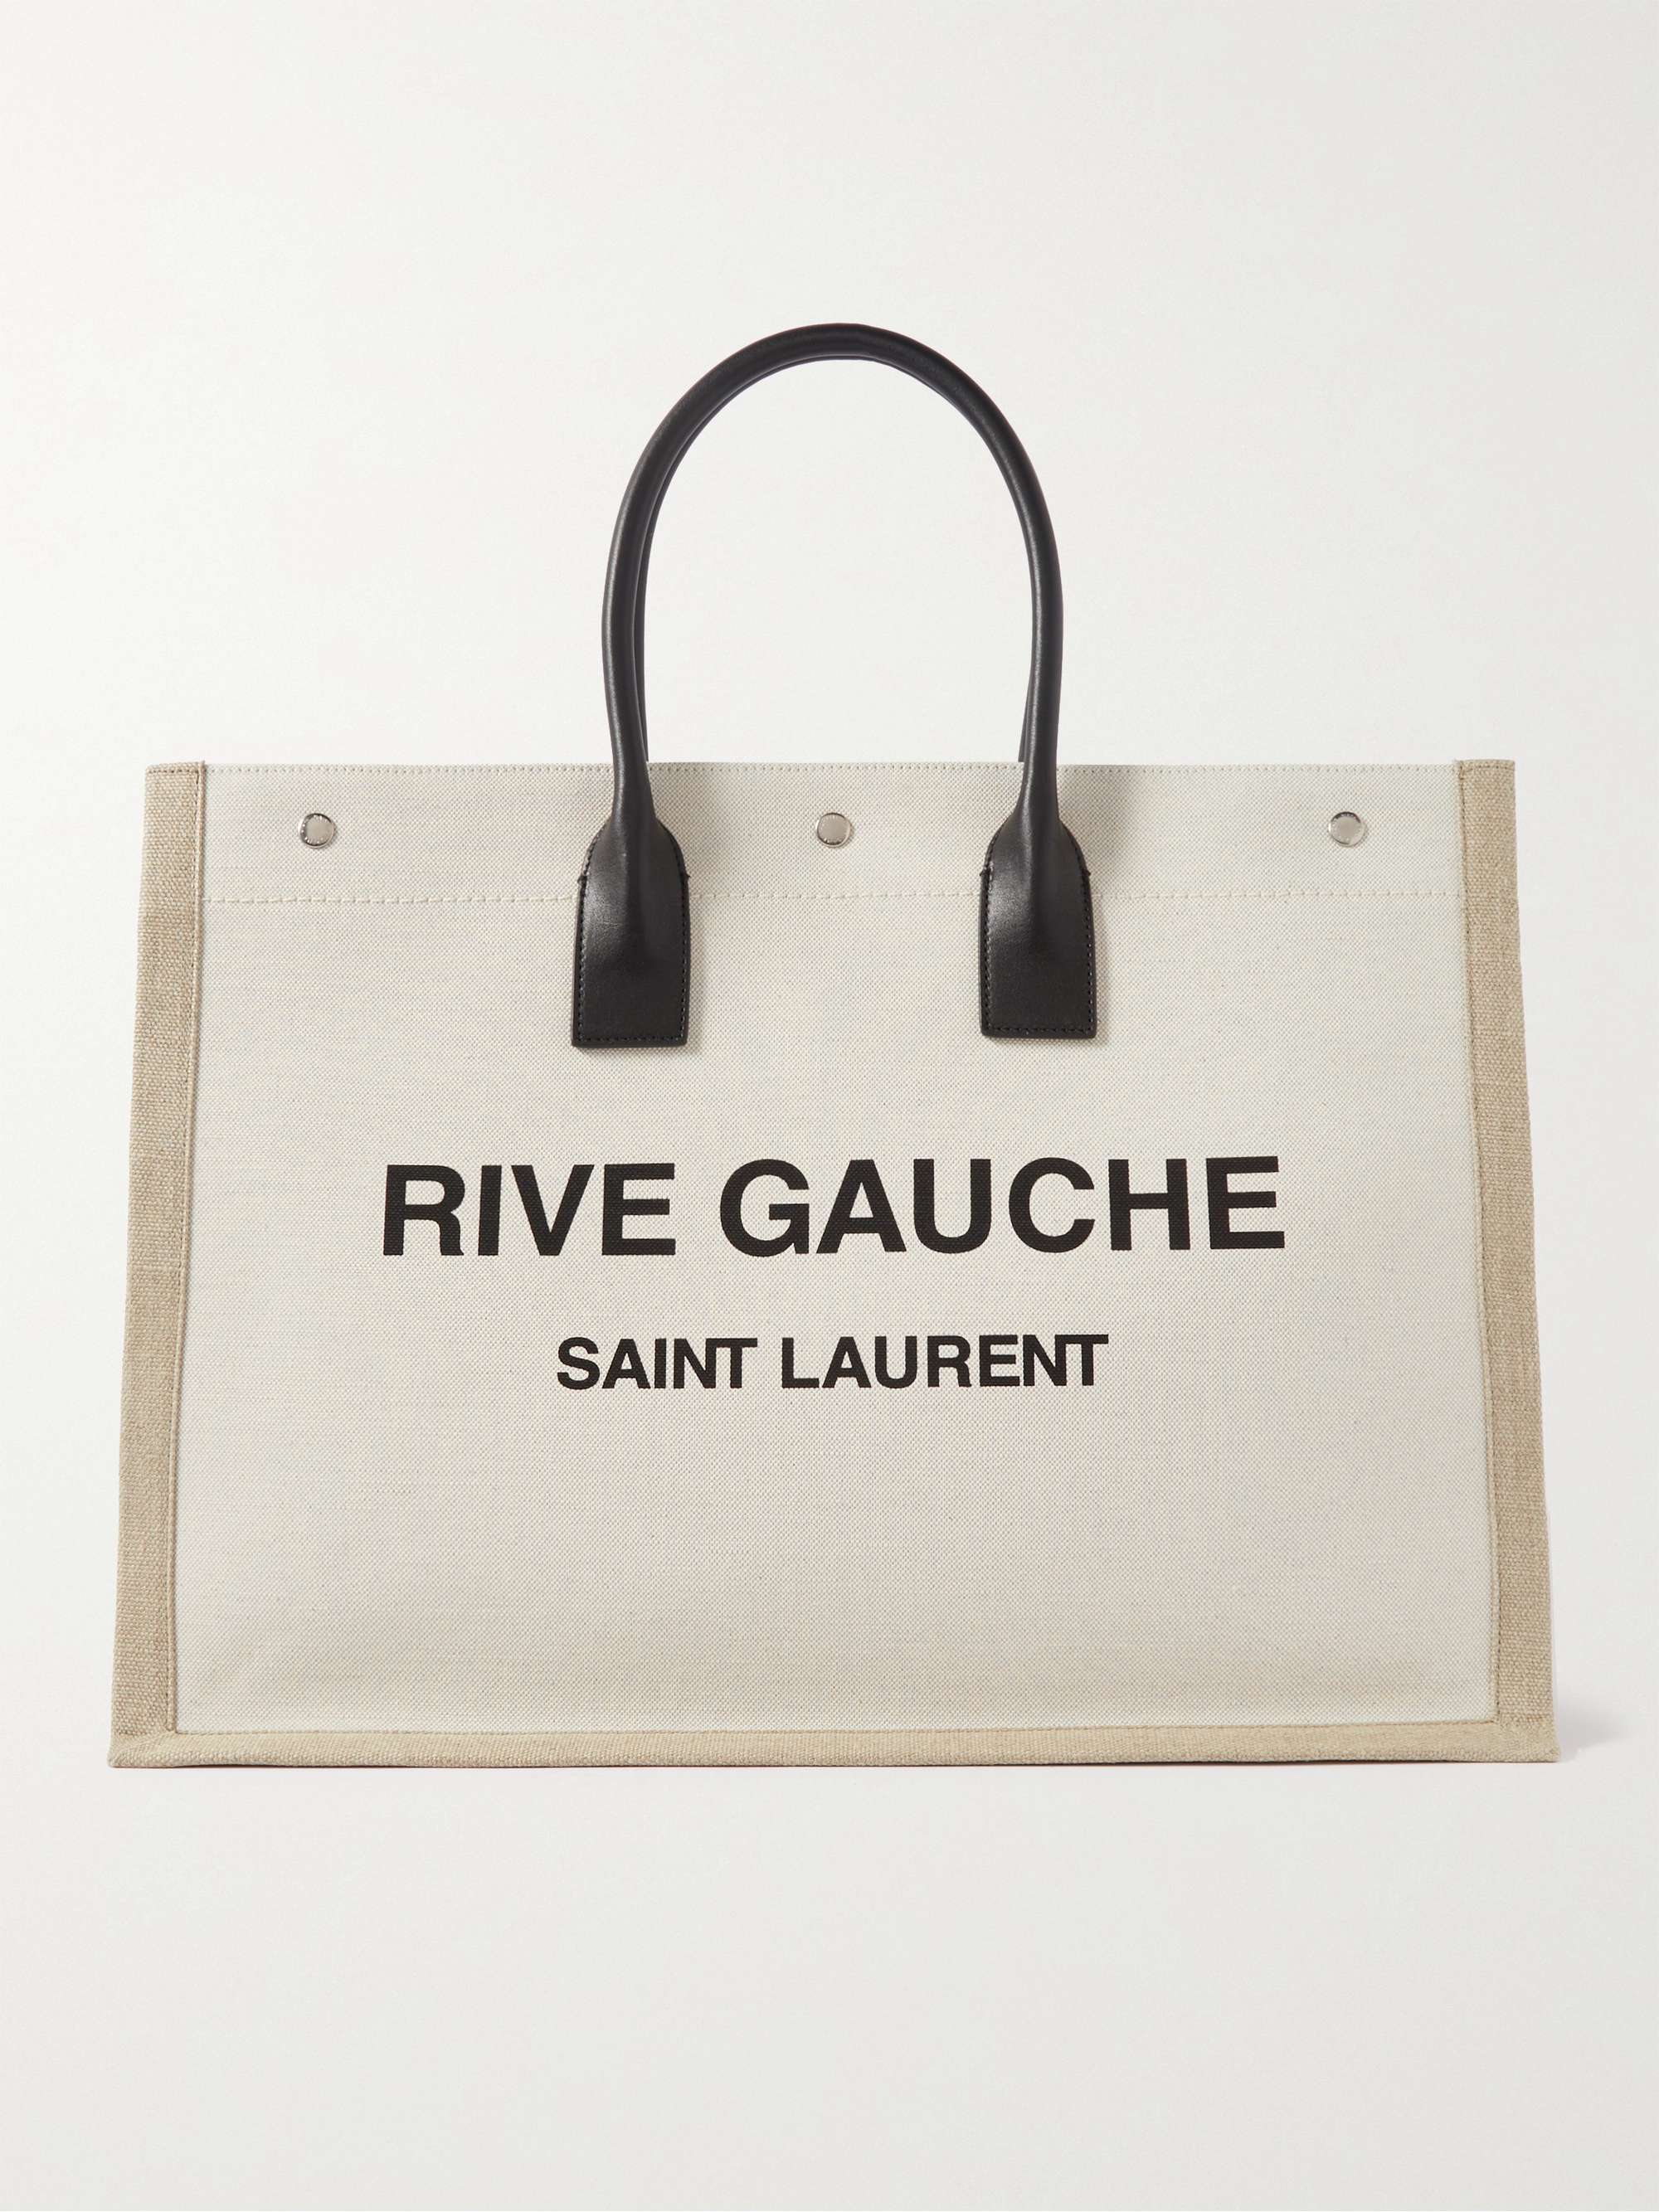 SAINT LAURENT Leather-Trimmed Logo-Print Linen and Cotton-Blend Canvas Tote Bag